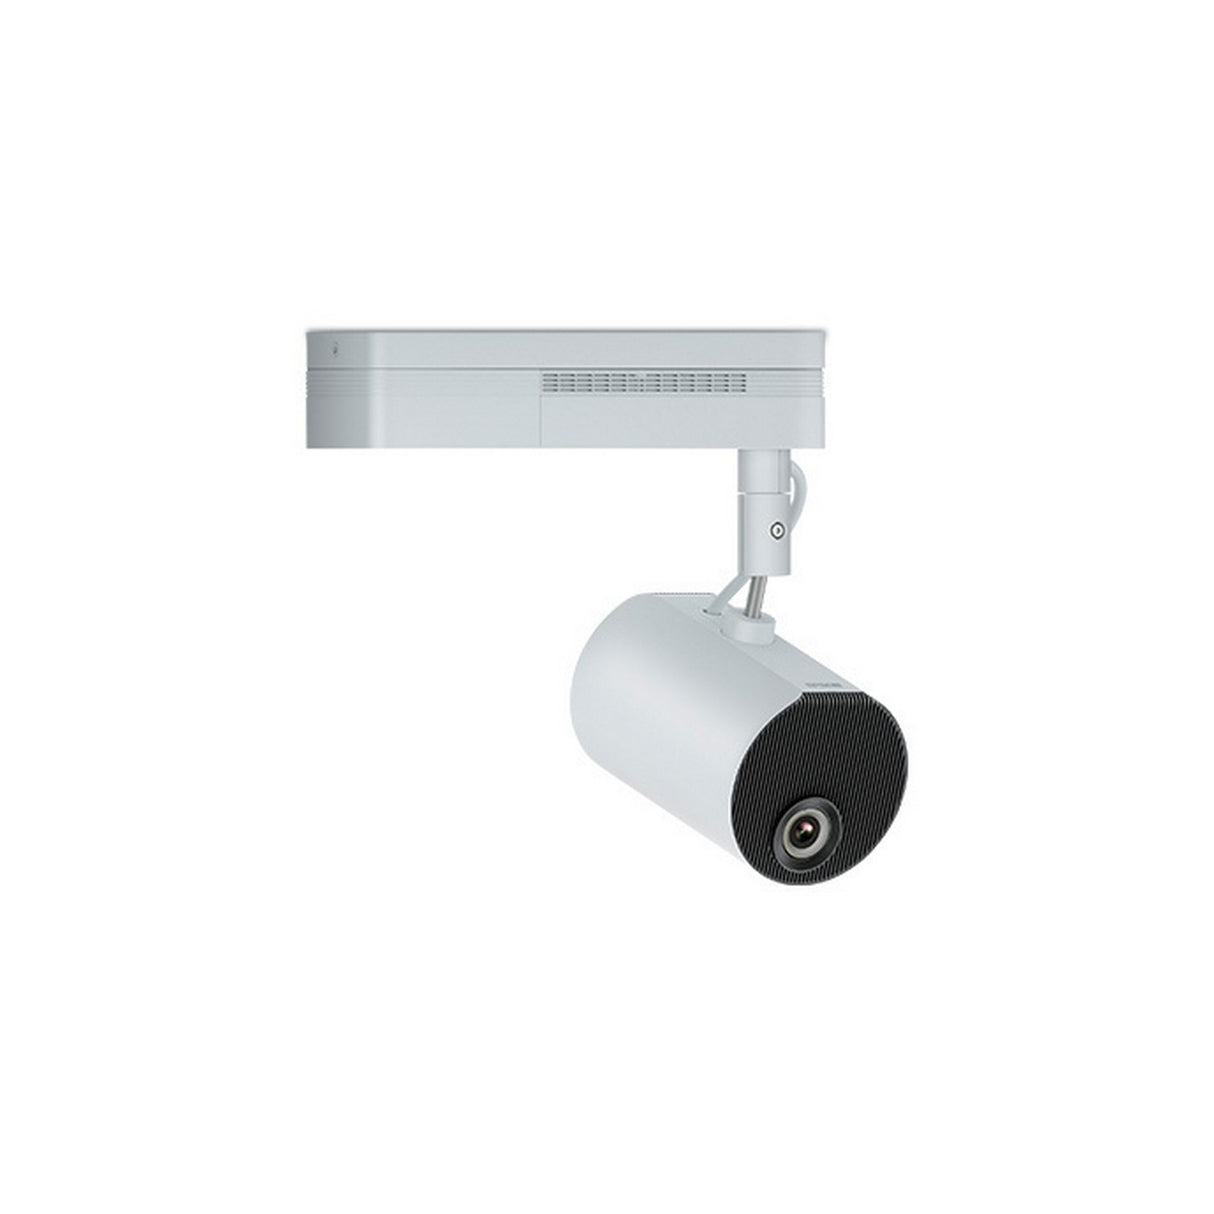 Epson EV-100 LightScene Accent Lighting 3LCD Laser Projector, White